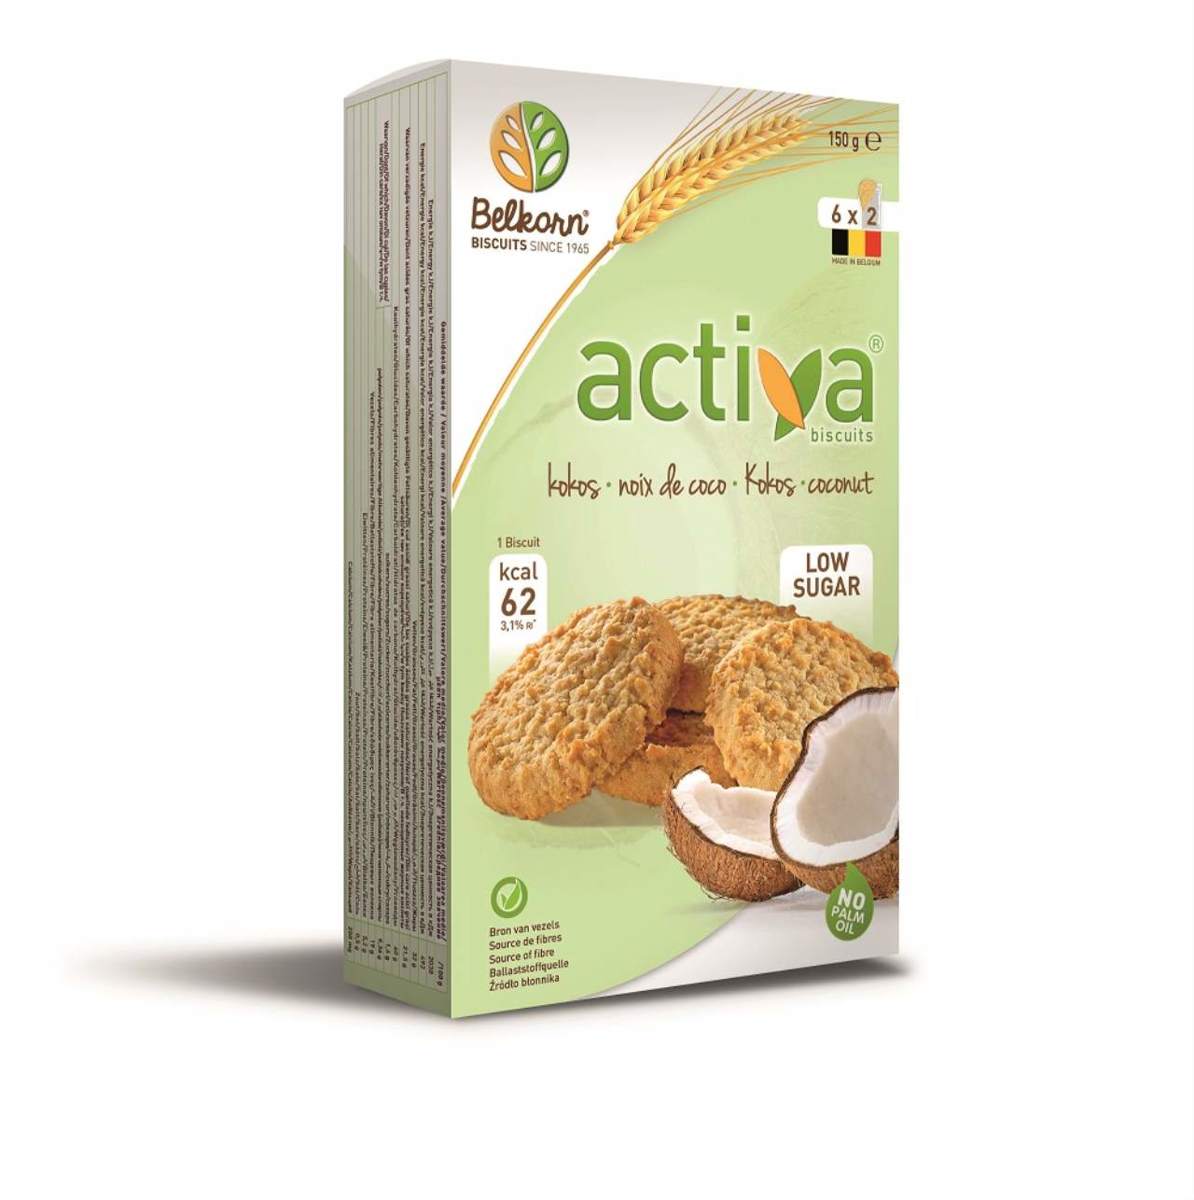 Belkorn - Activa biscuits à la noix de coco (pauvre en sucre) 6 x 2 pièces (150 g)